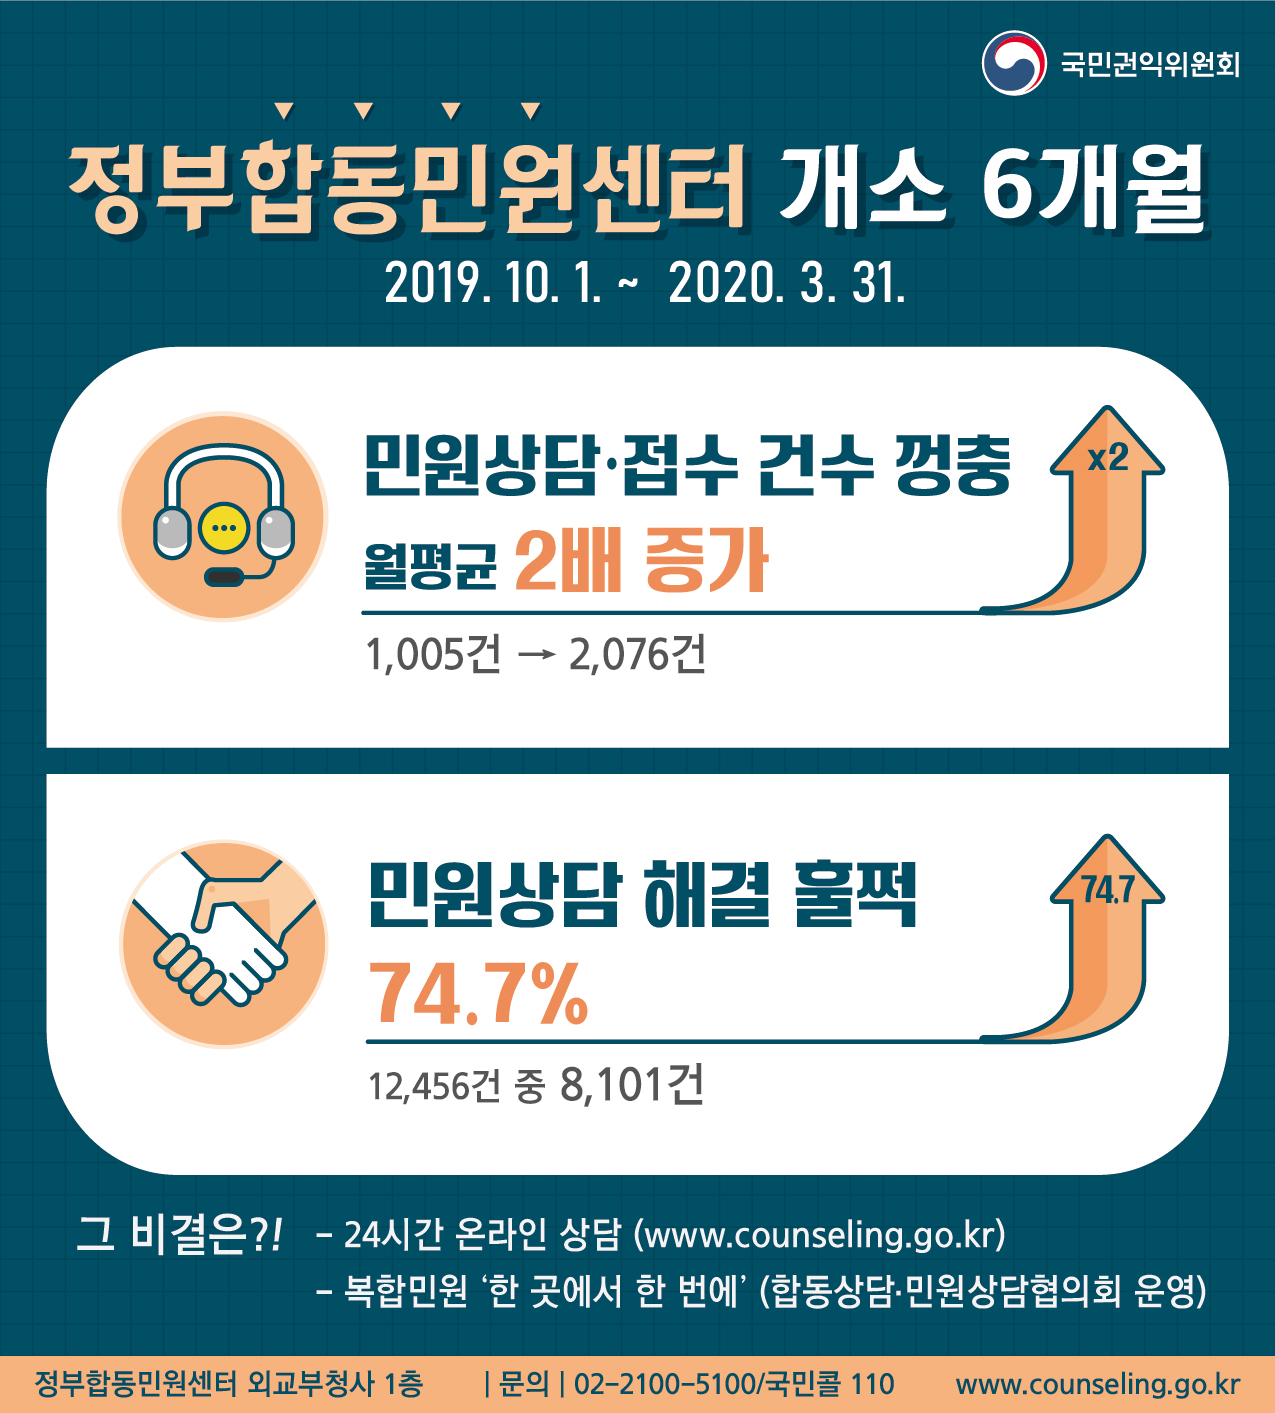 정부합동민원센터 개소 6개월 카드뉴스